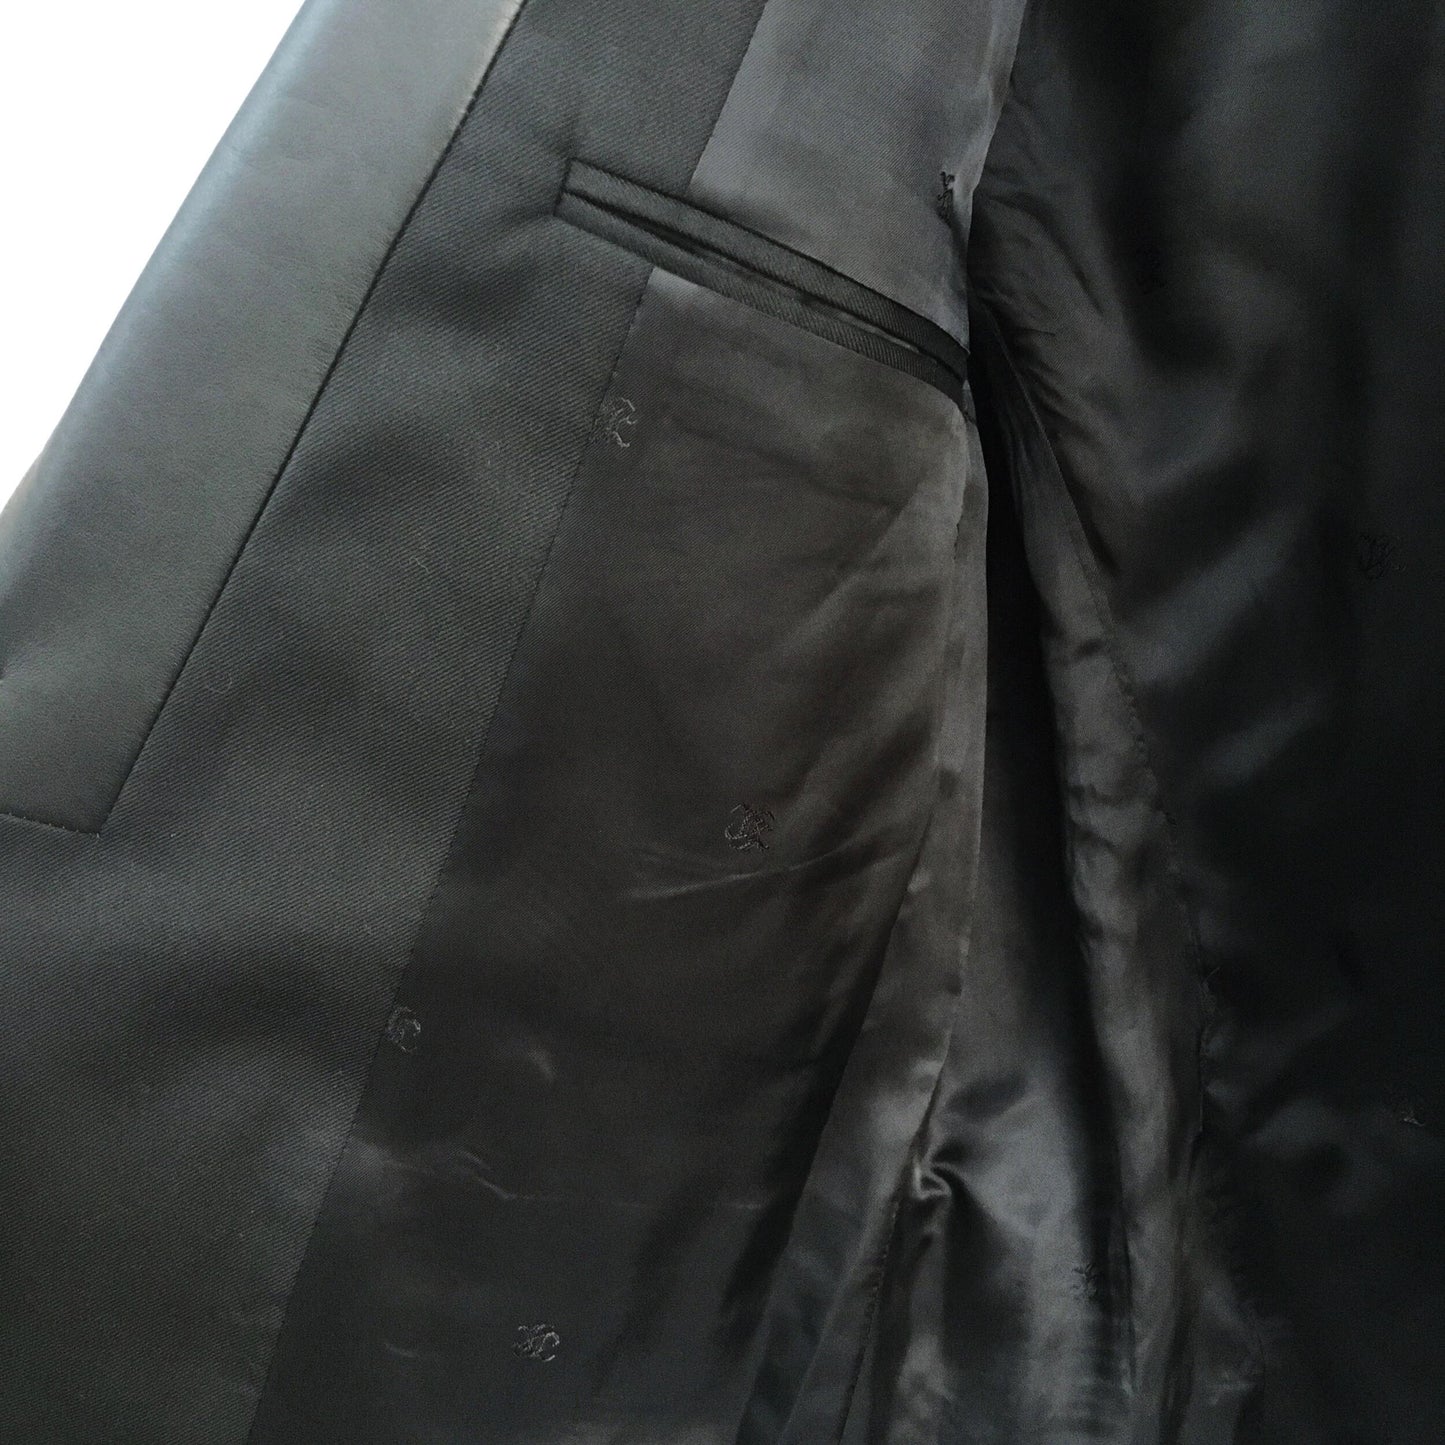 The Kooples Tuxedo Blazer with Leather Trim - size S/M